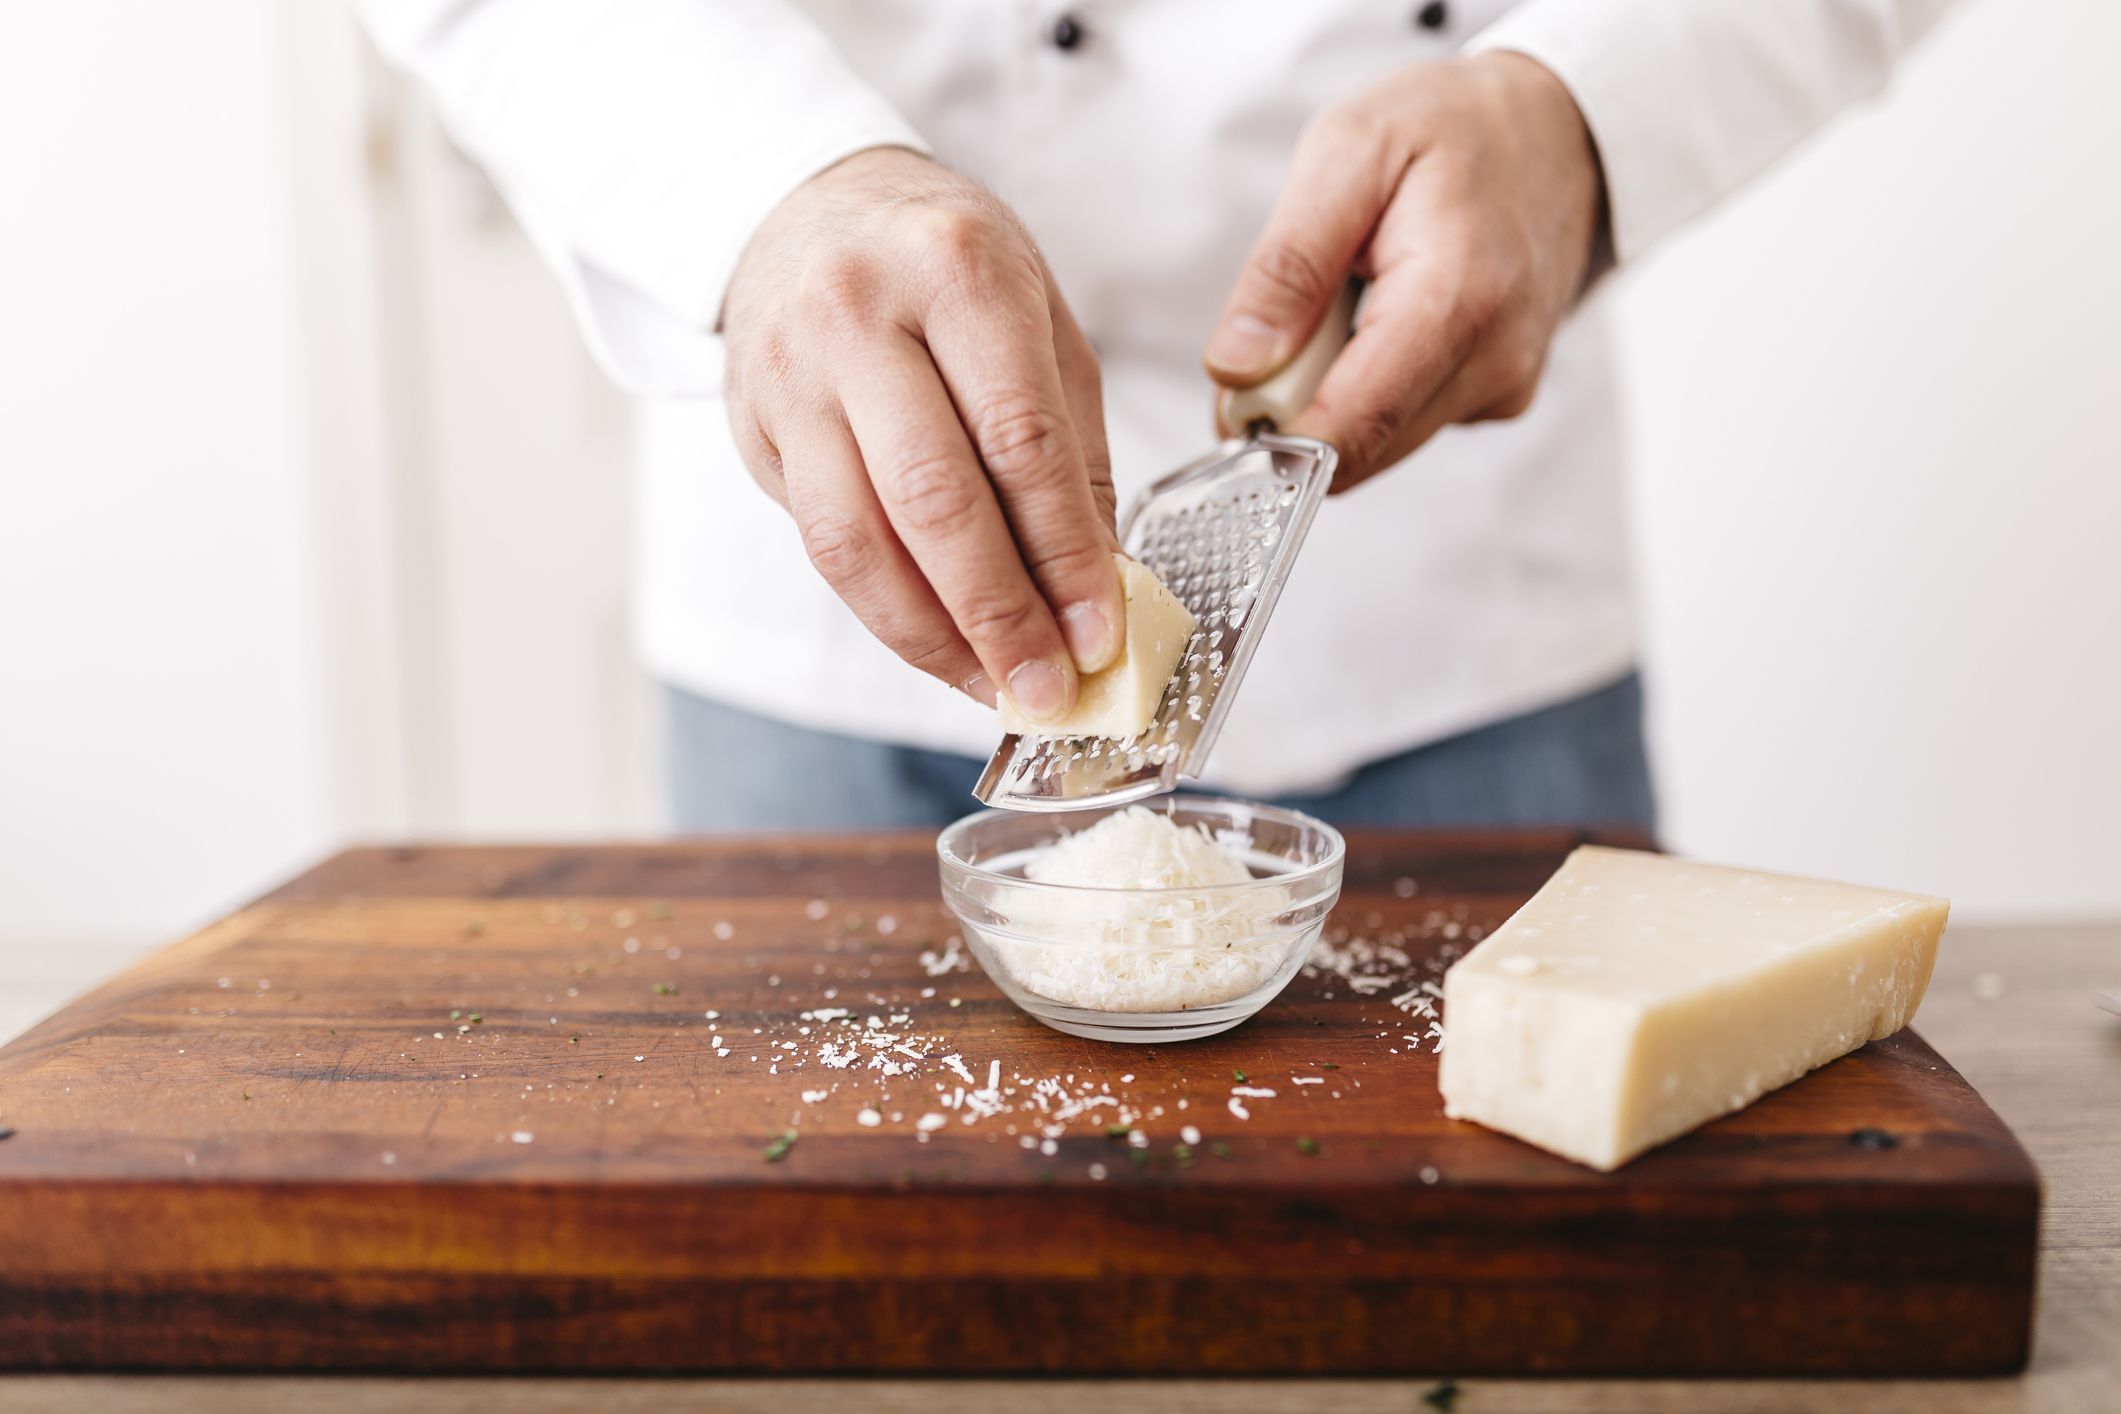 Come grattugiare il parmigiano: trucco e i consigli